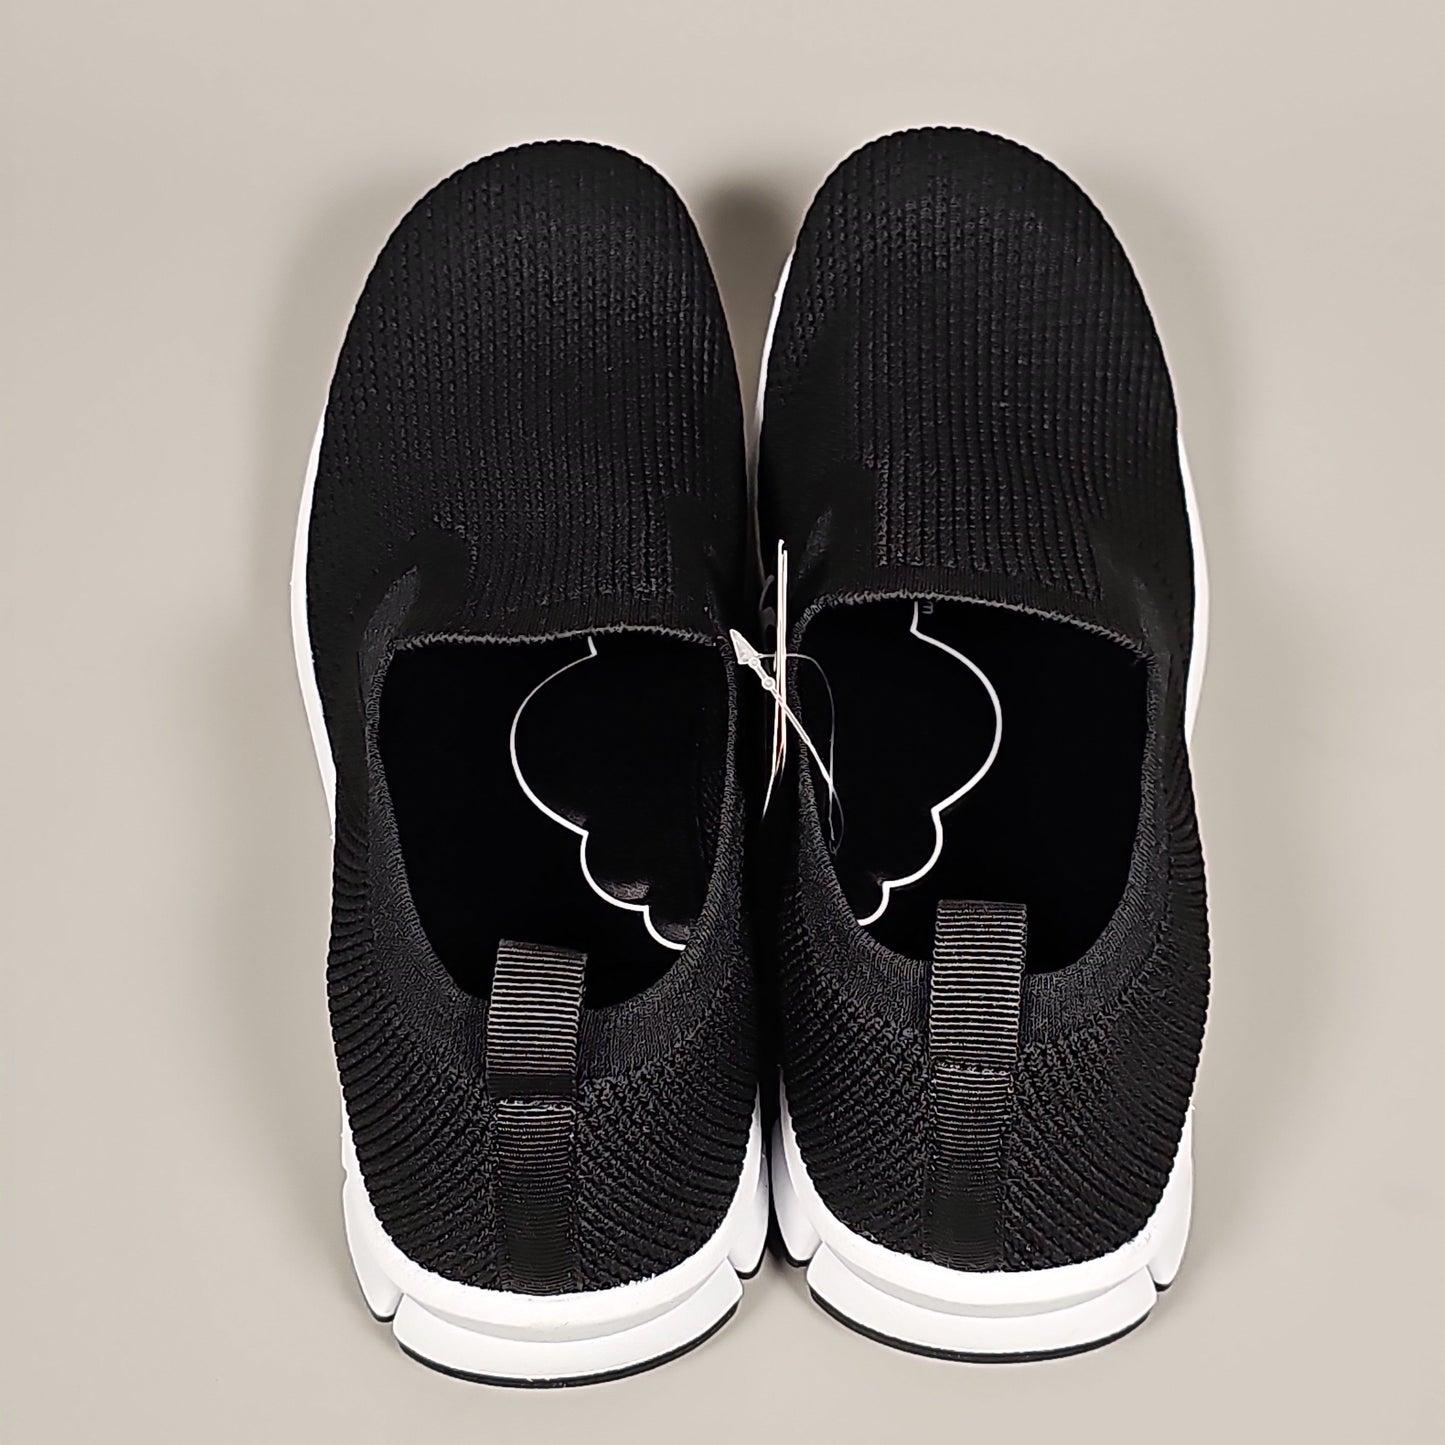 DEER STAGS Eddy Men's Slip-On Shoe Sneaker Sz 13 Black (New)